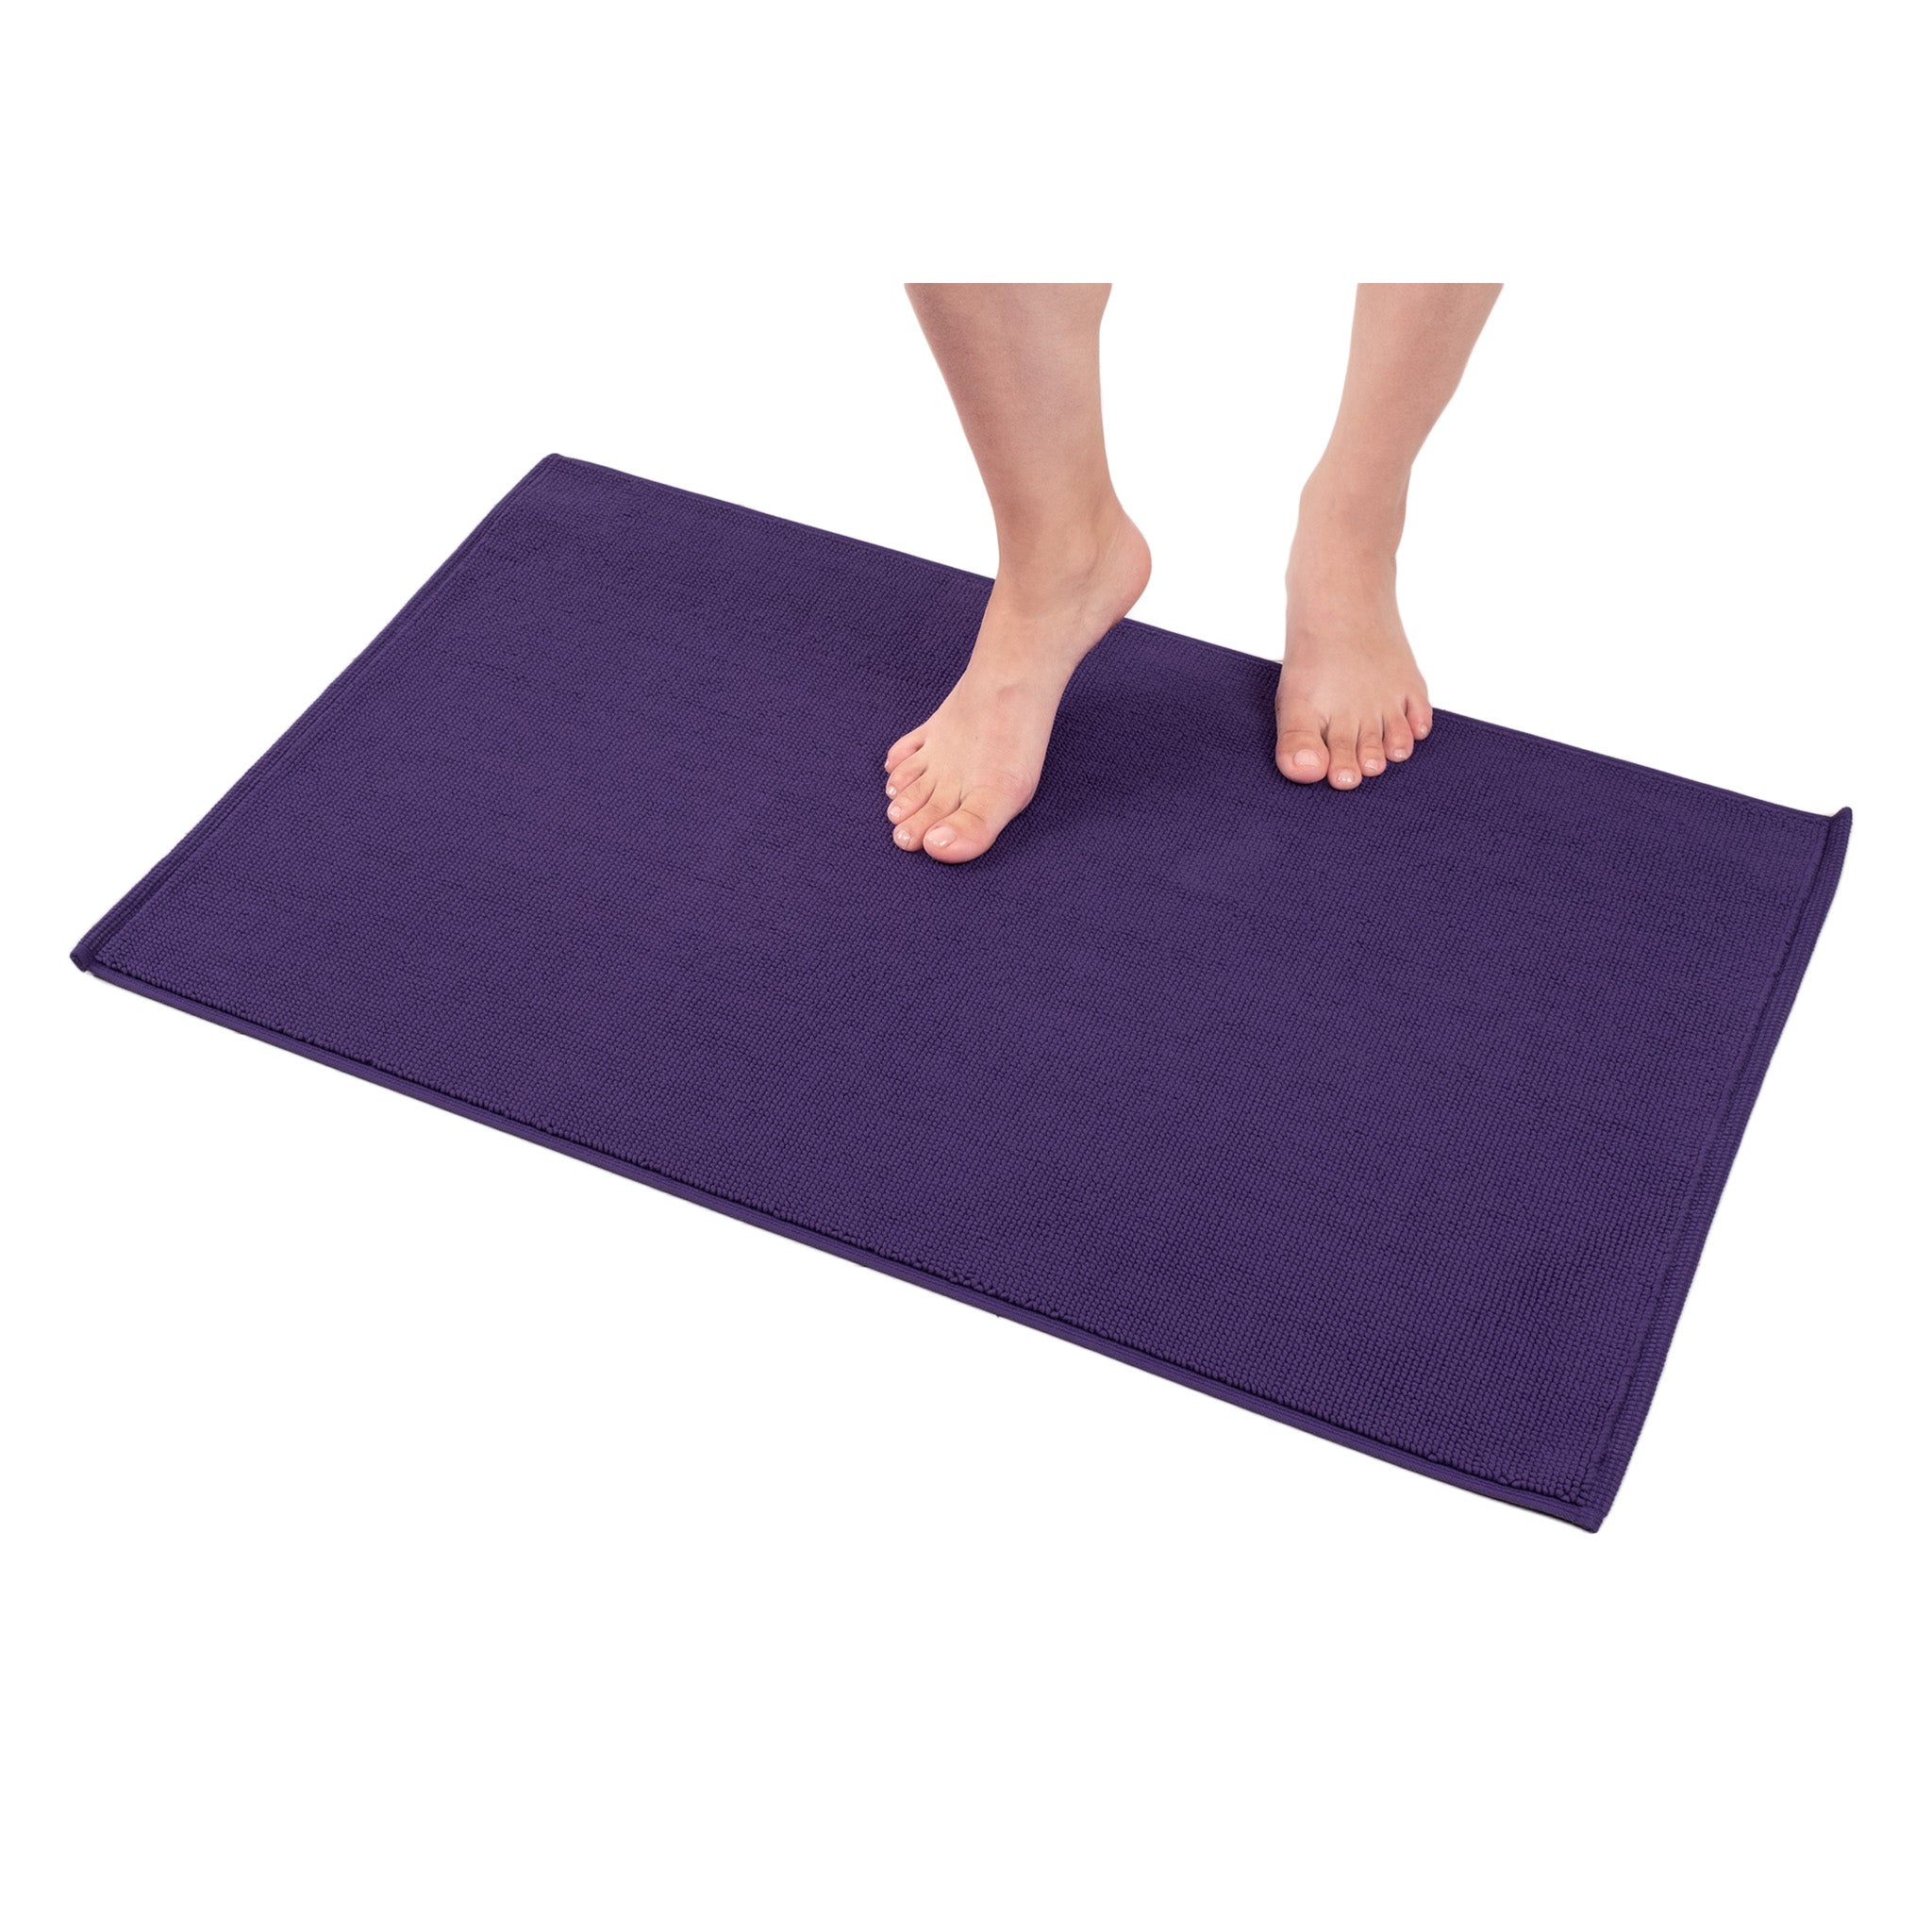 American Soft Linen Non-slip 20x34 100% Cotton Bath Rug Wholesale purple-1